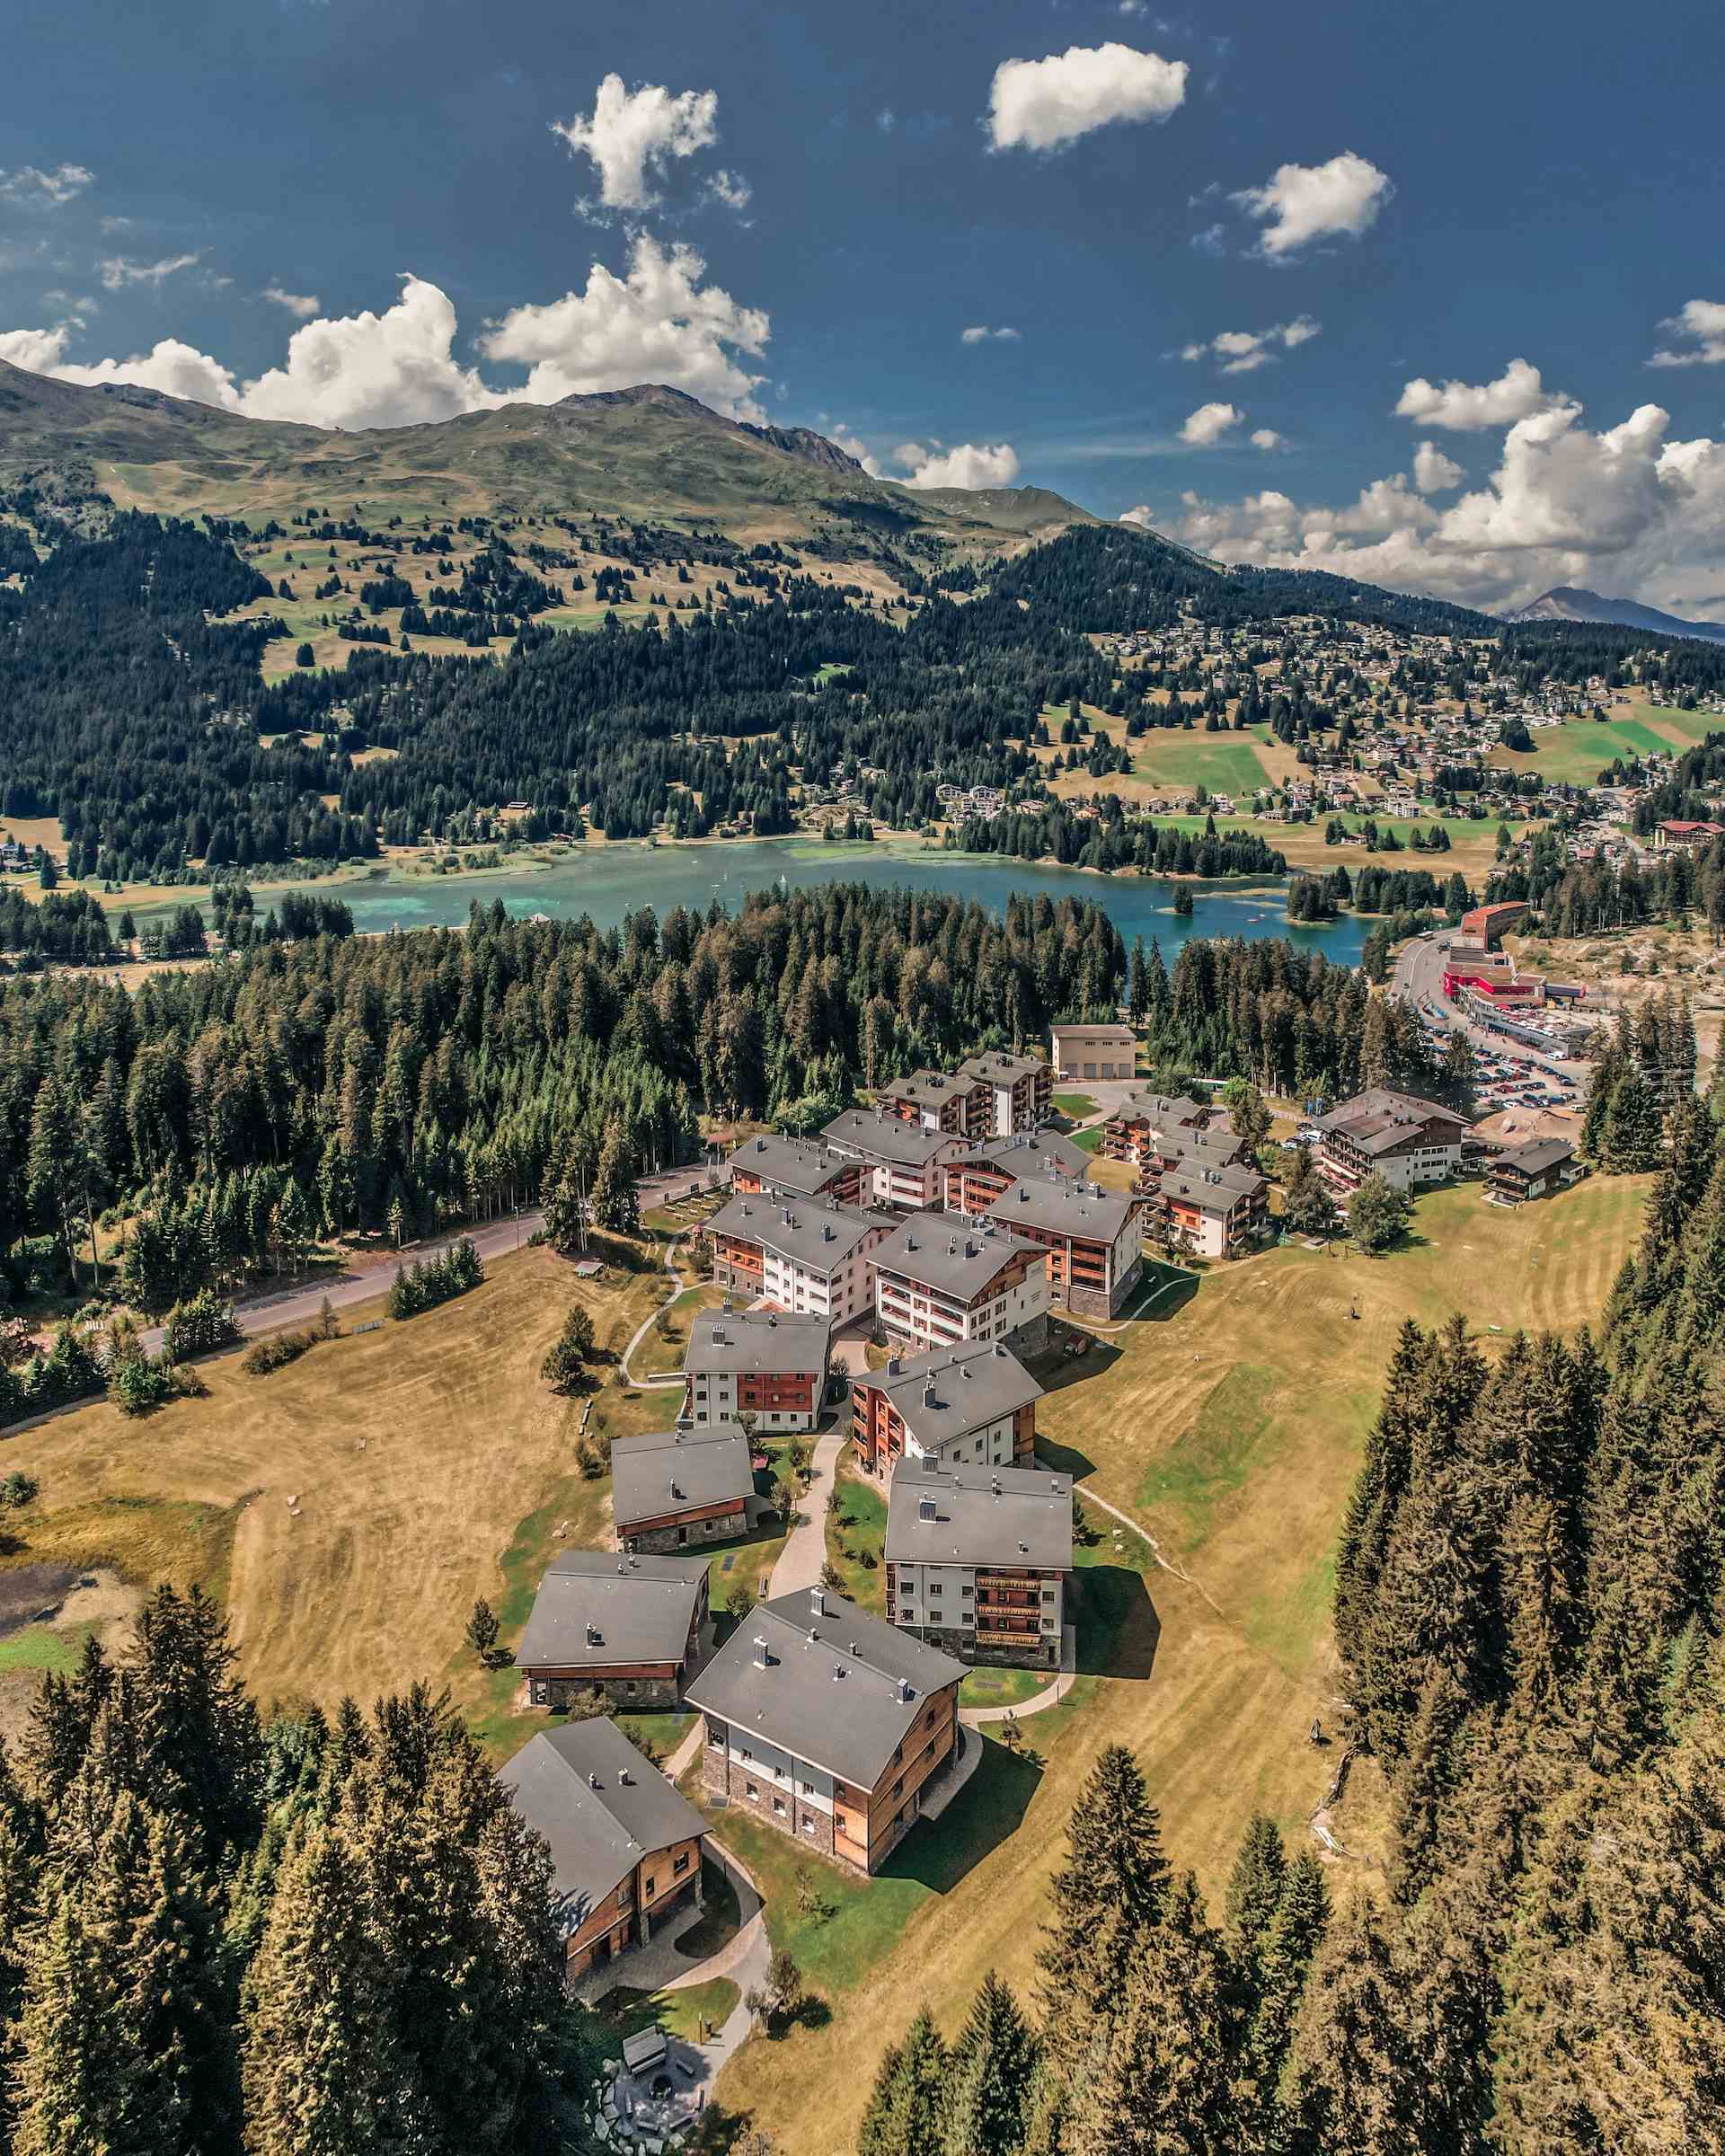 Biohof Seeli, producer in Waltensburg/Vuorz canton of Graubünden in Switzerland